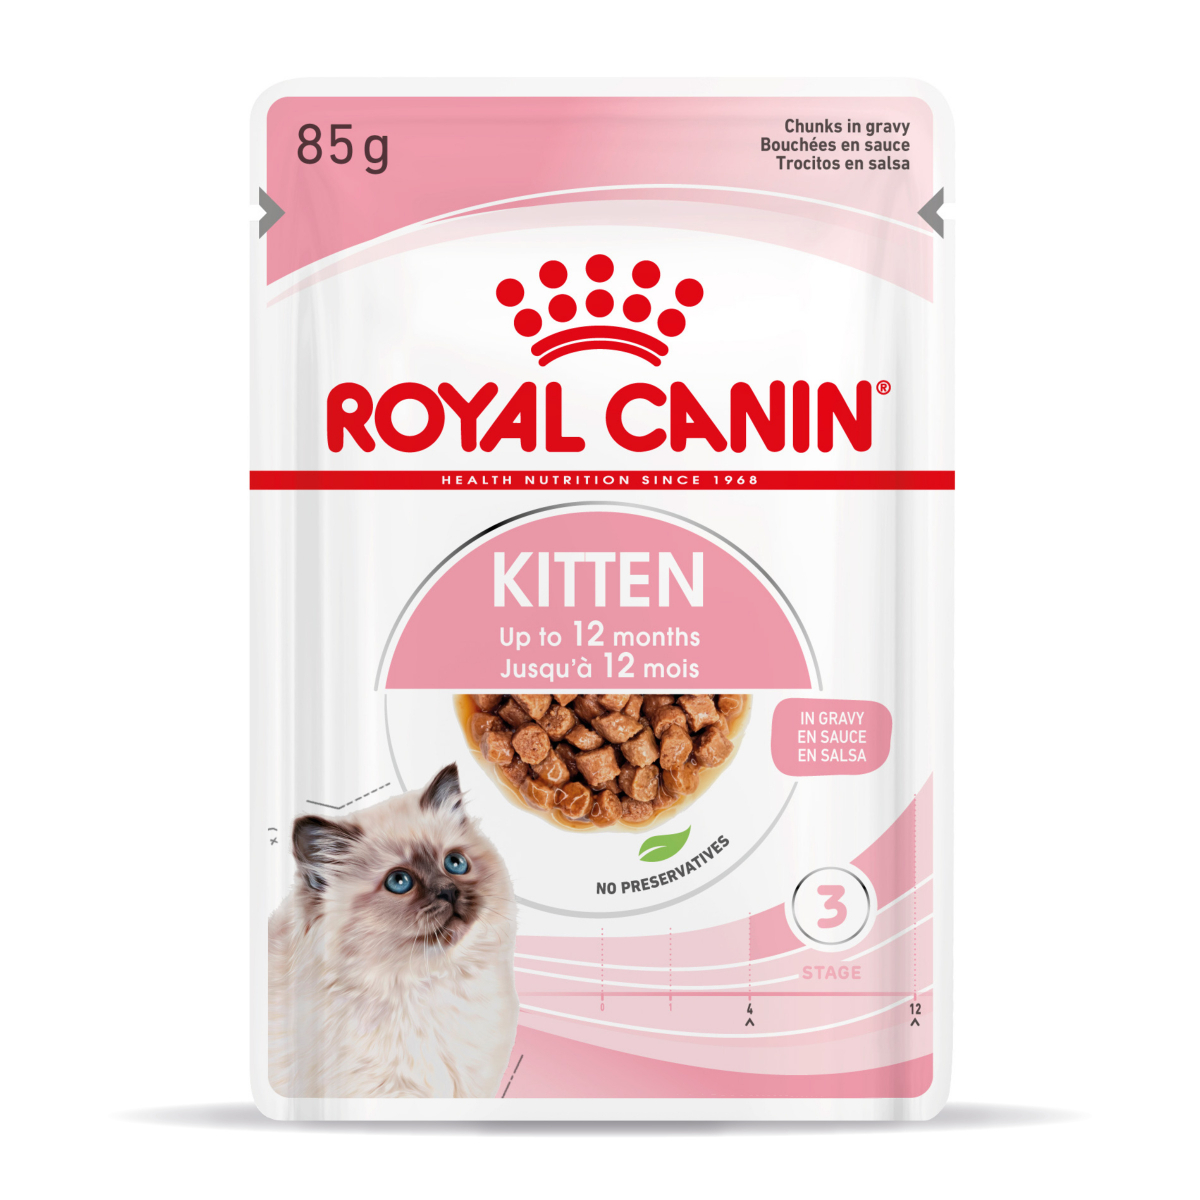 Royal Canin Kitten Bocaditos en salsa para gatitos